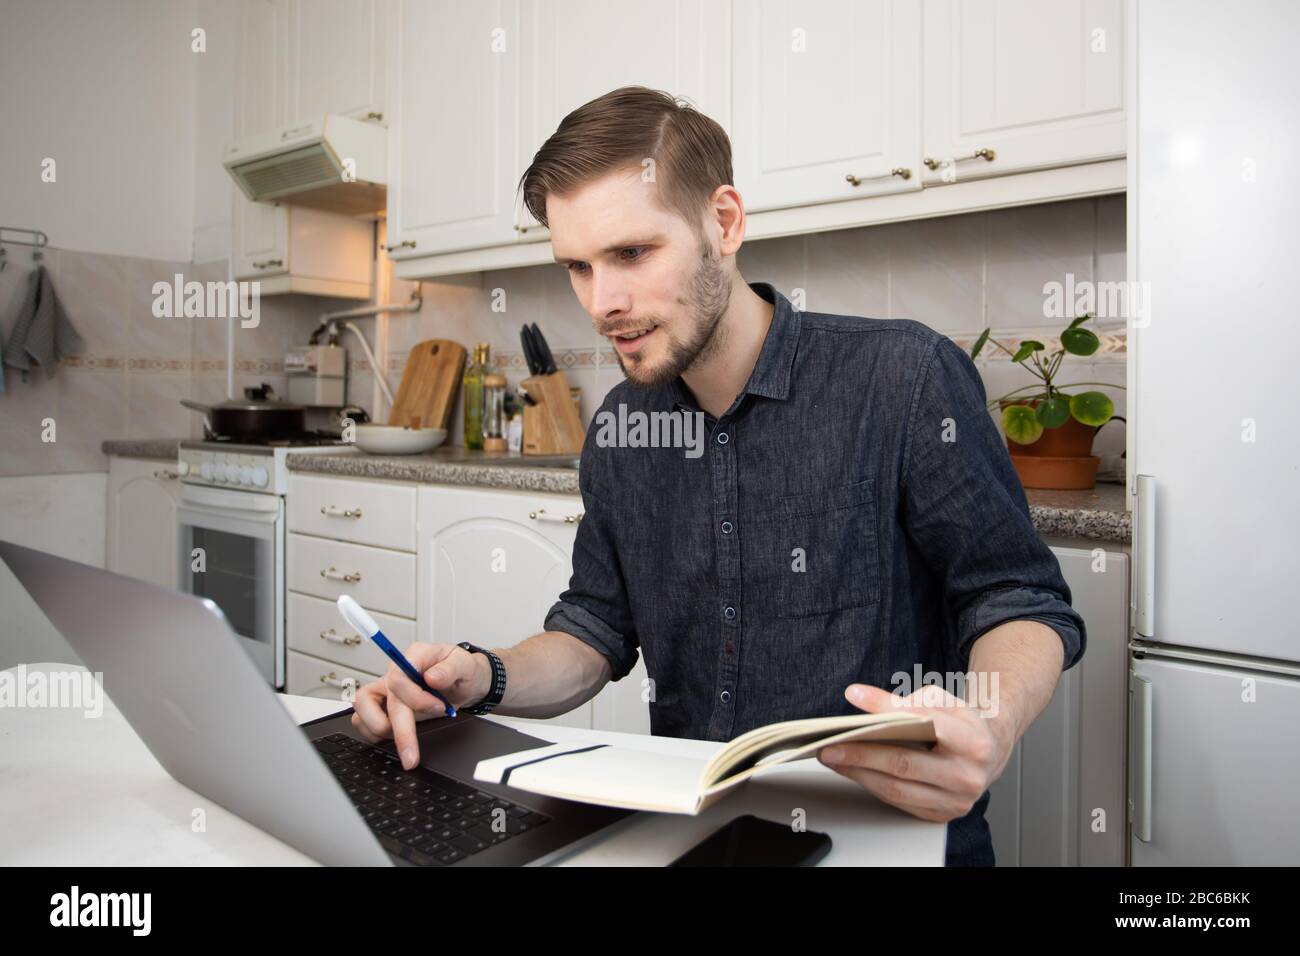 Travailler à domicile pendant l'éclosion de Coronavirus. Un homme indépendant heureux travaillant à domicile. Portrait d'un homme assis à son bureau dans le petit kit d'appartement Banque D'Images